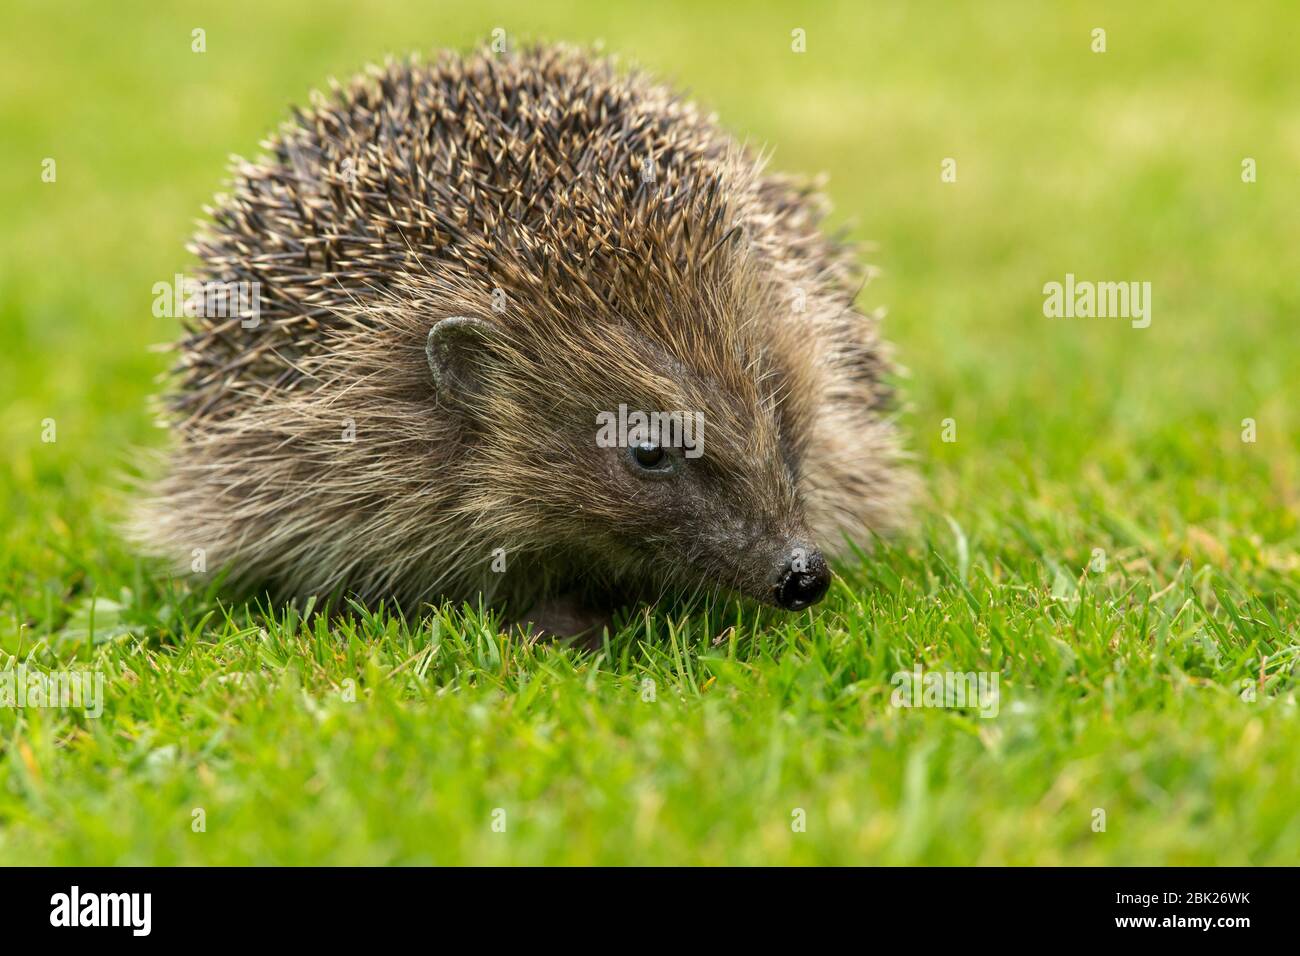 Hedgehog (nome scientifico: Erinaceus Europaeus) primo piano di un hedgehog selvaggio, nativo, europeo, di fronte a destra in habitat naturale giardino. Orizzontale. Foto Stock